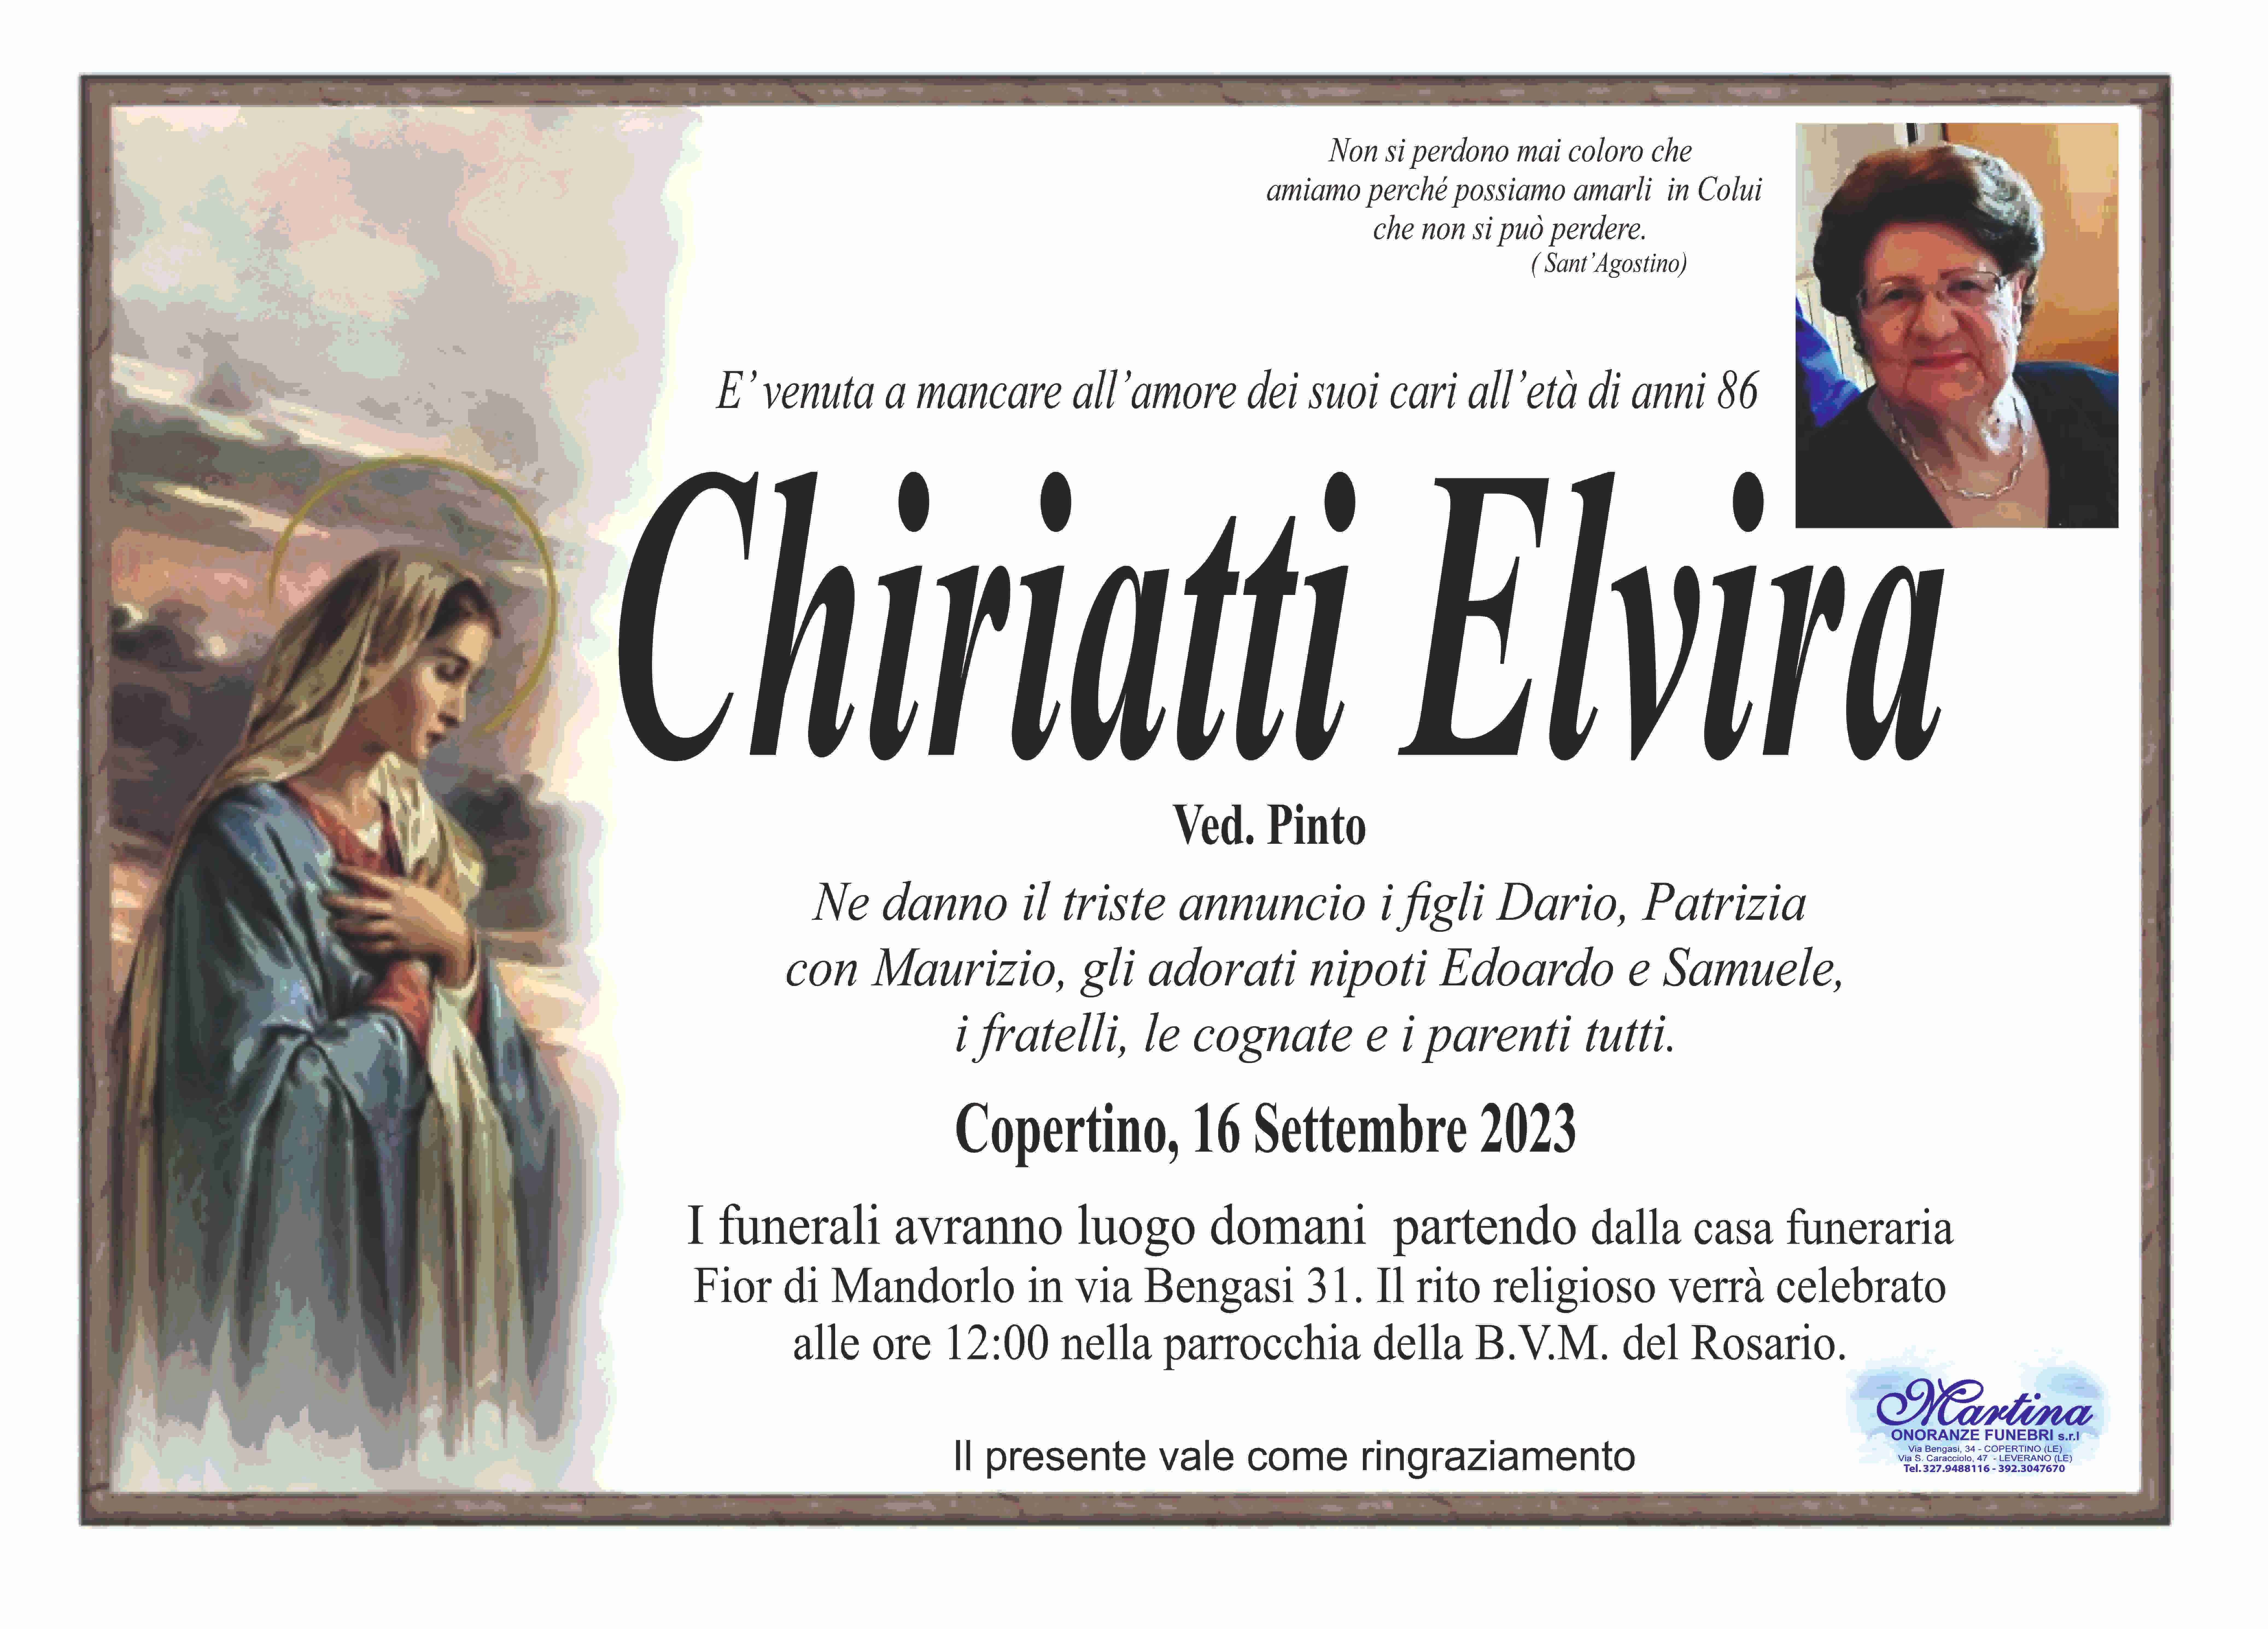 Elvira Chiriatti